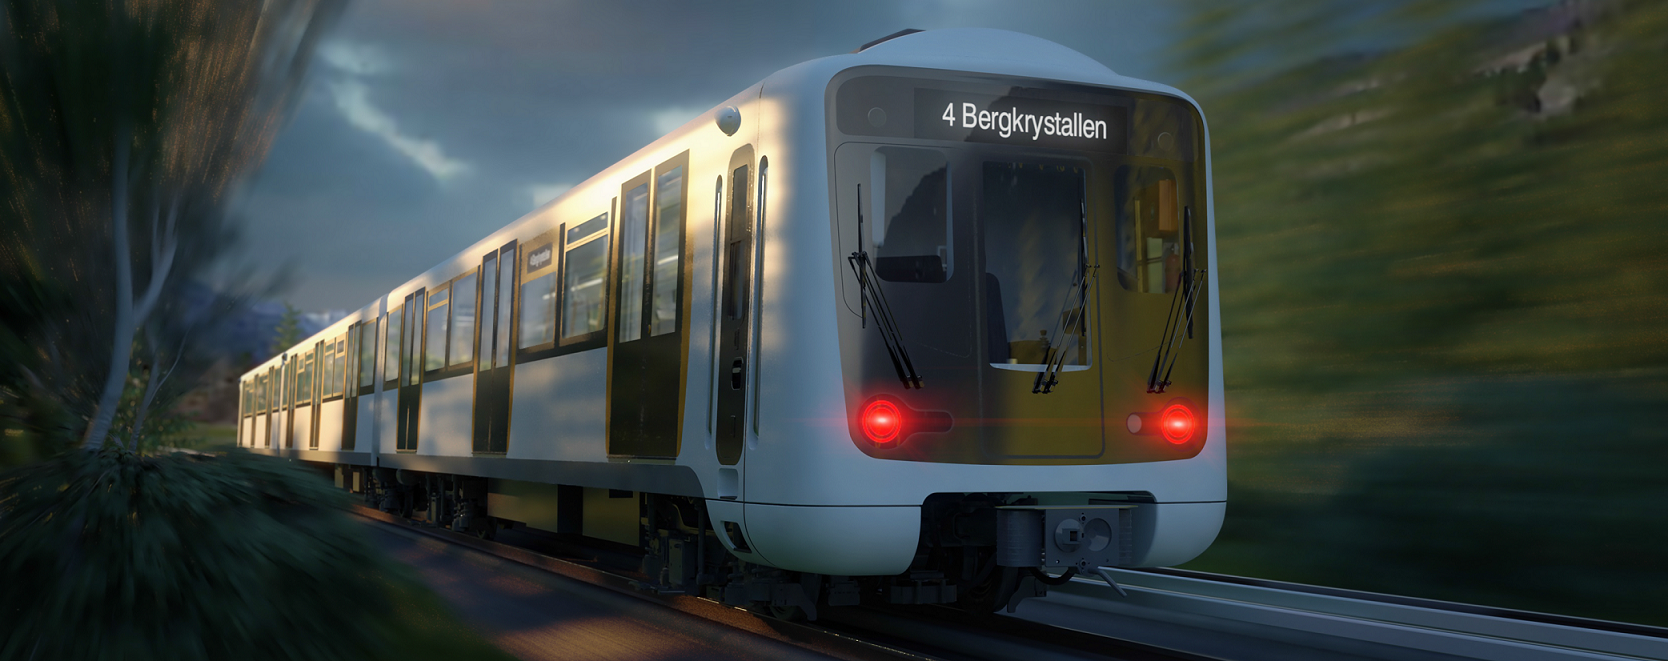 CAF se adjudica el suministro de unidades de Metro para Oslo